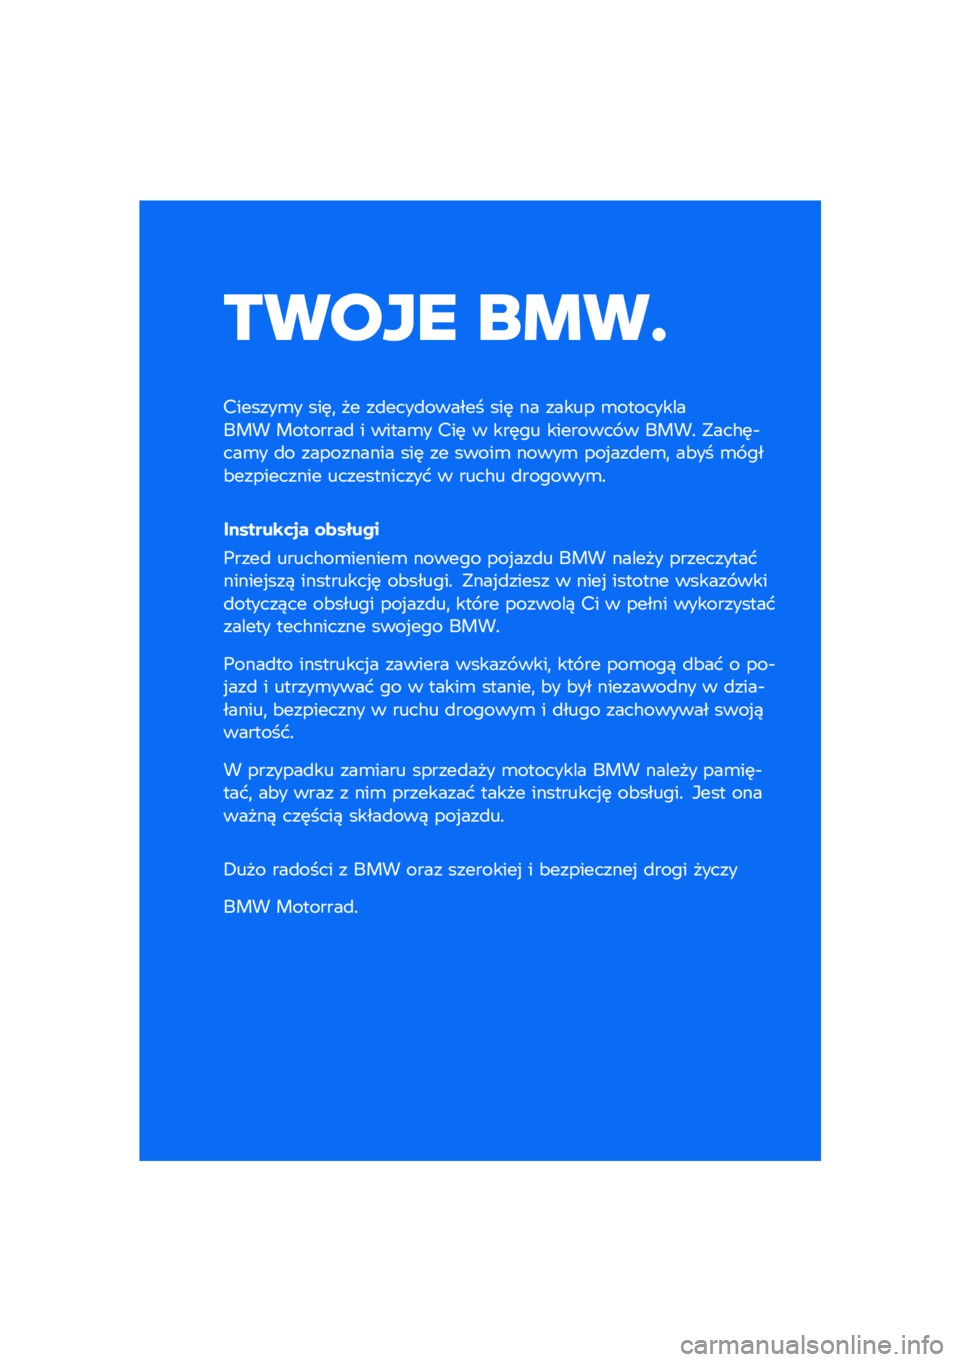 BMW MOTORRAD R NINE T URVAN G/S 2020  Instrukcja obsługi (in Polish) ����� ��\b��	
�������\b� ���	�
 �� ��
����
������ ���	 �� ����� �\b����������� ��������
 � �����\b� ���	 � ���	�� �������� �